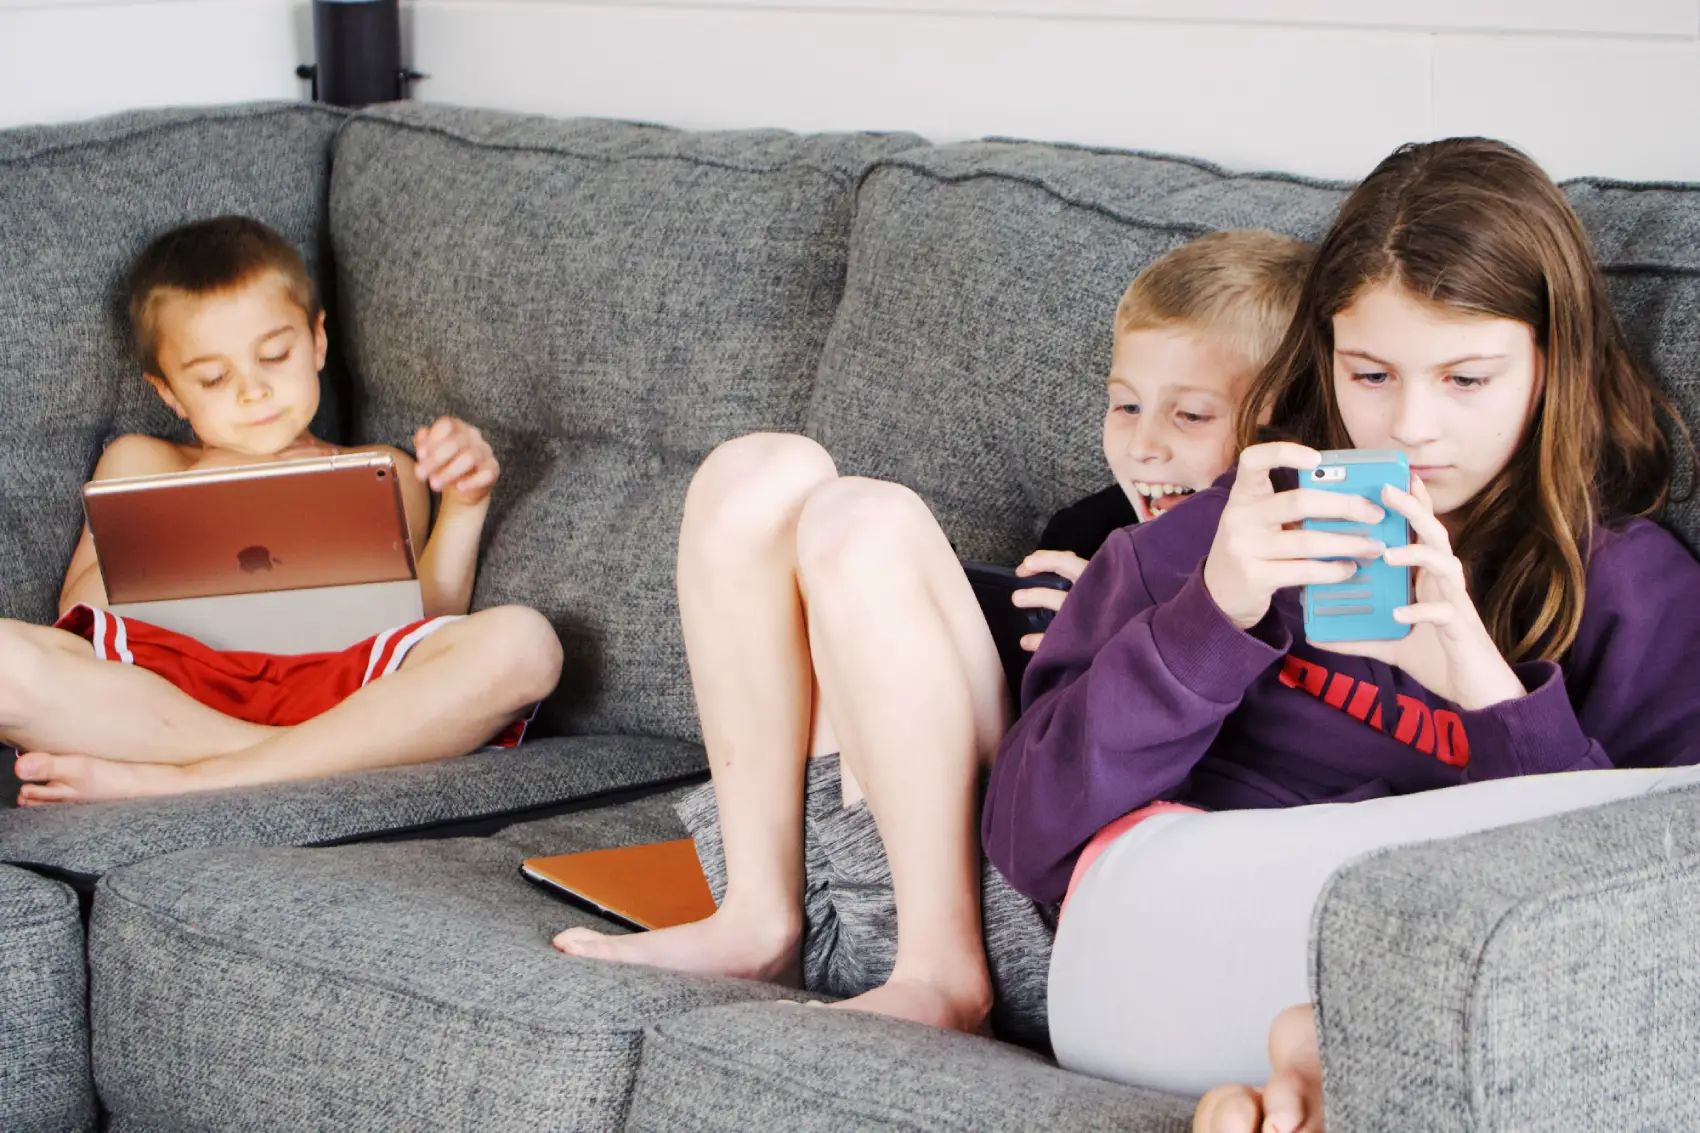 स्मार्टफोन की लत बच्चों के दिमाग पर कैसे डाल रही है खराब असर